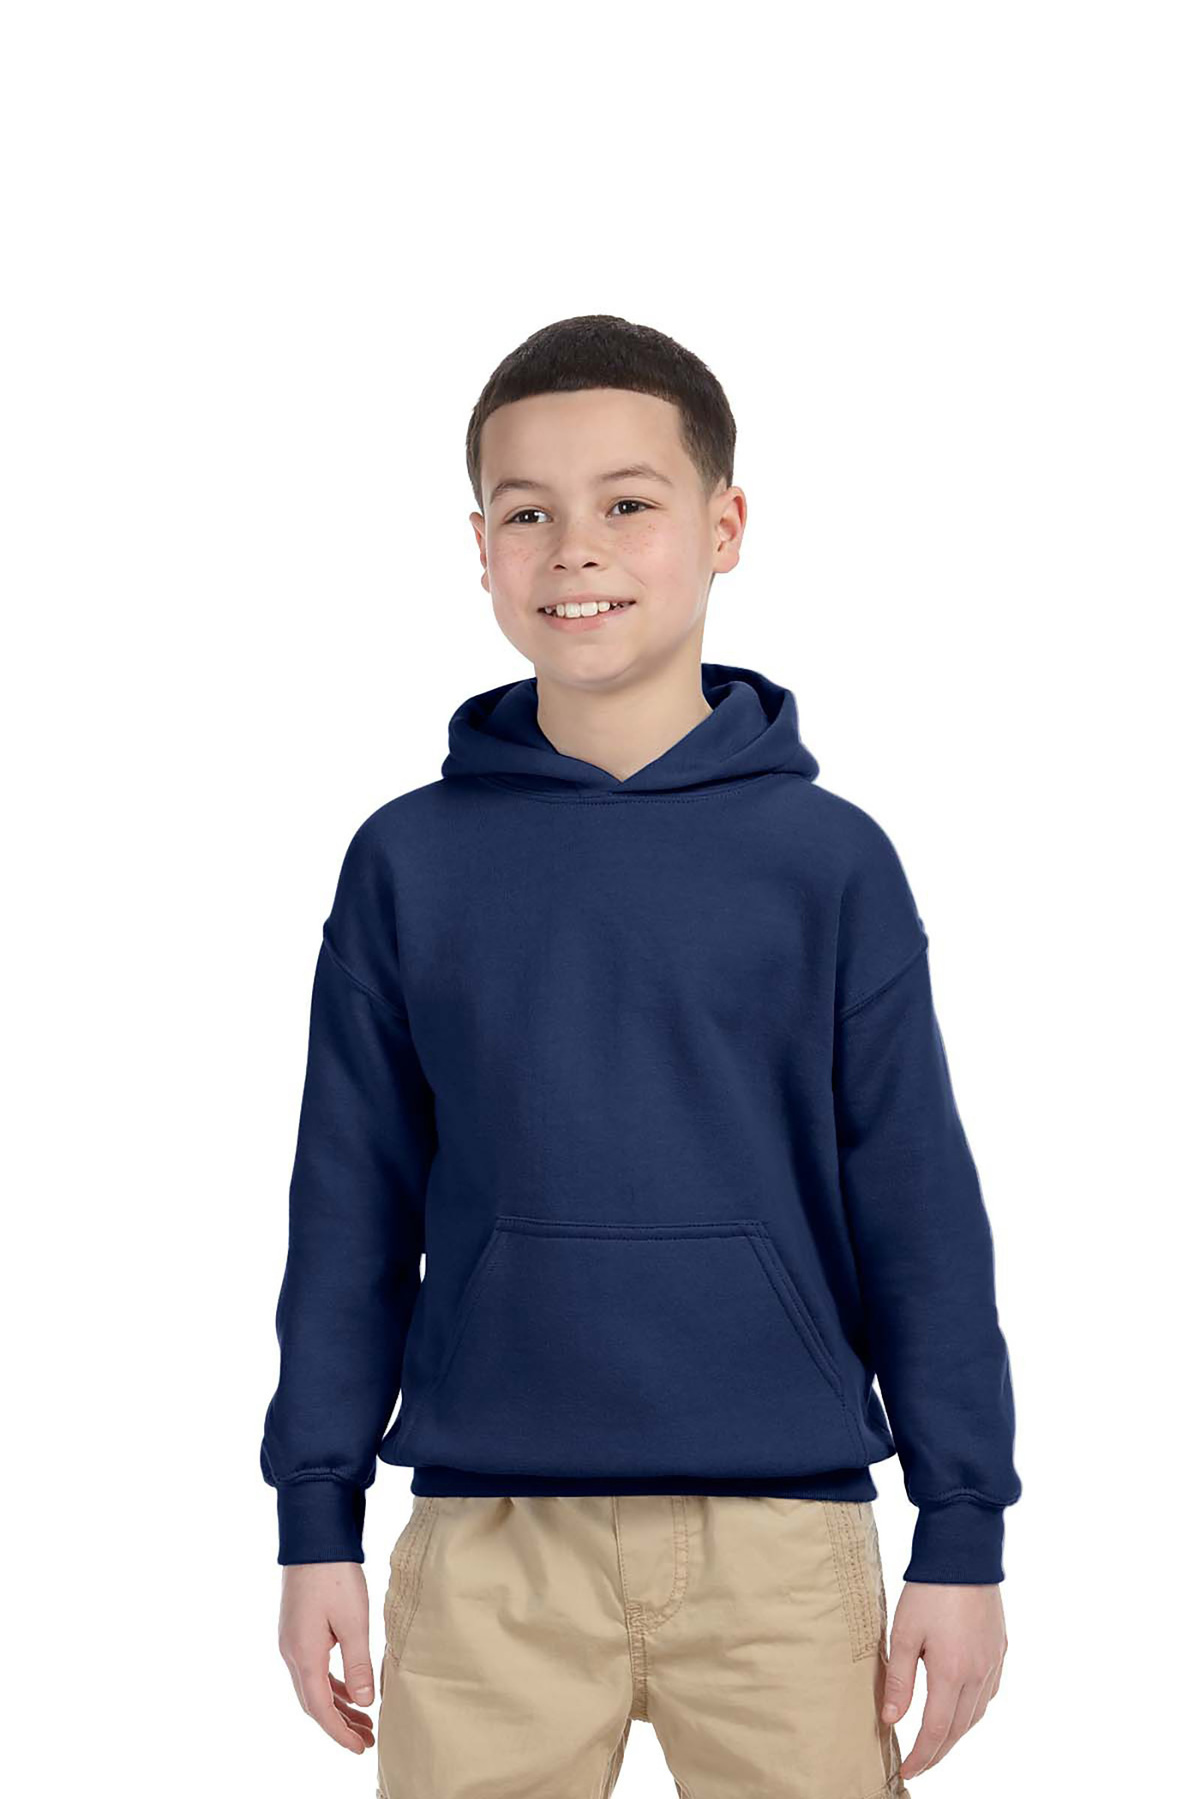 Gildan Embroidered Youth Hooded Sweatshirt | Sweatshirts & Sweaters ...